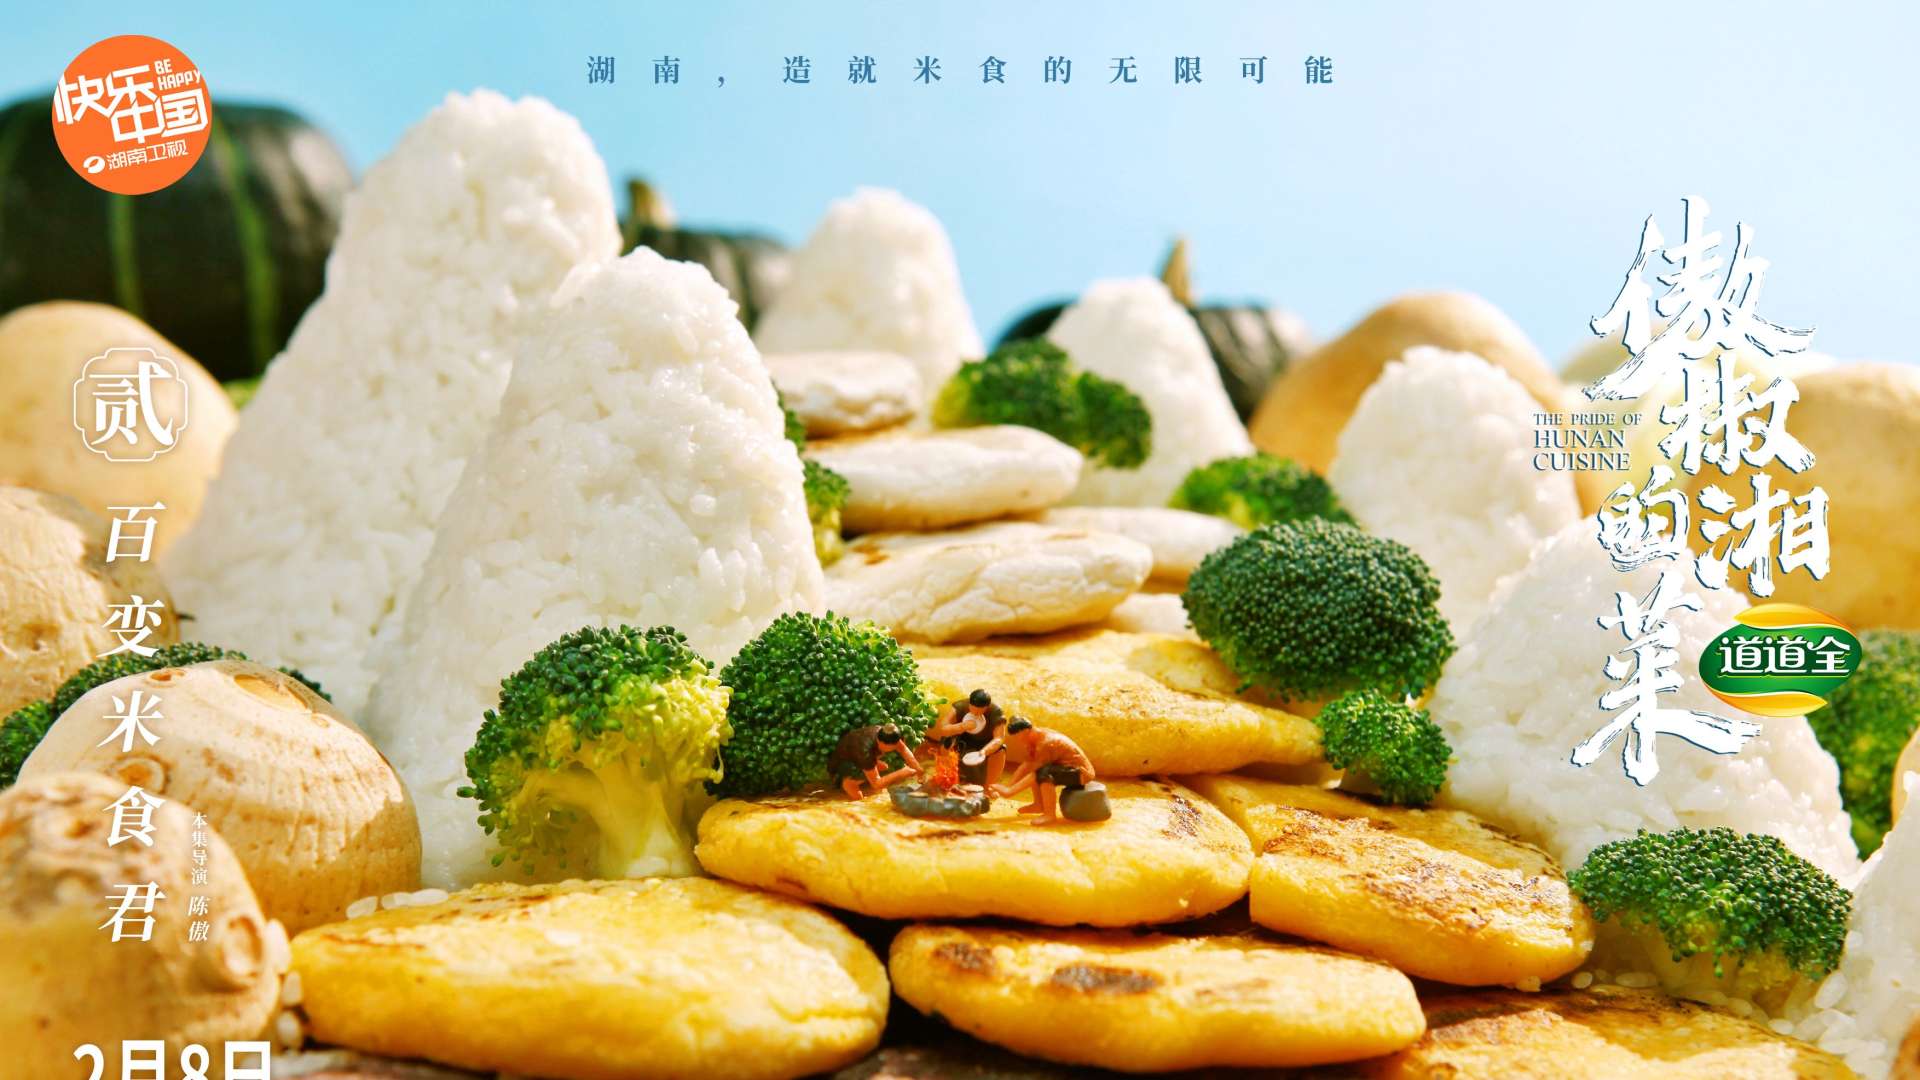 湖南卫视春节黄金档纪录片《傲椒的湘菜》第二集“百变米食君”